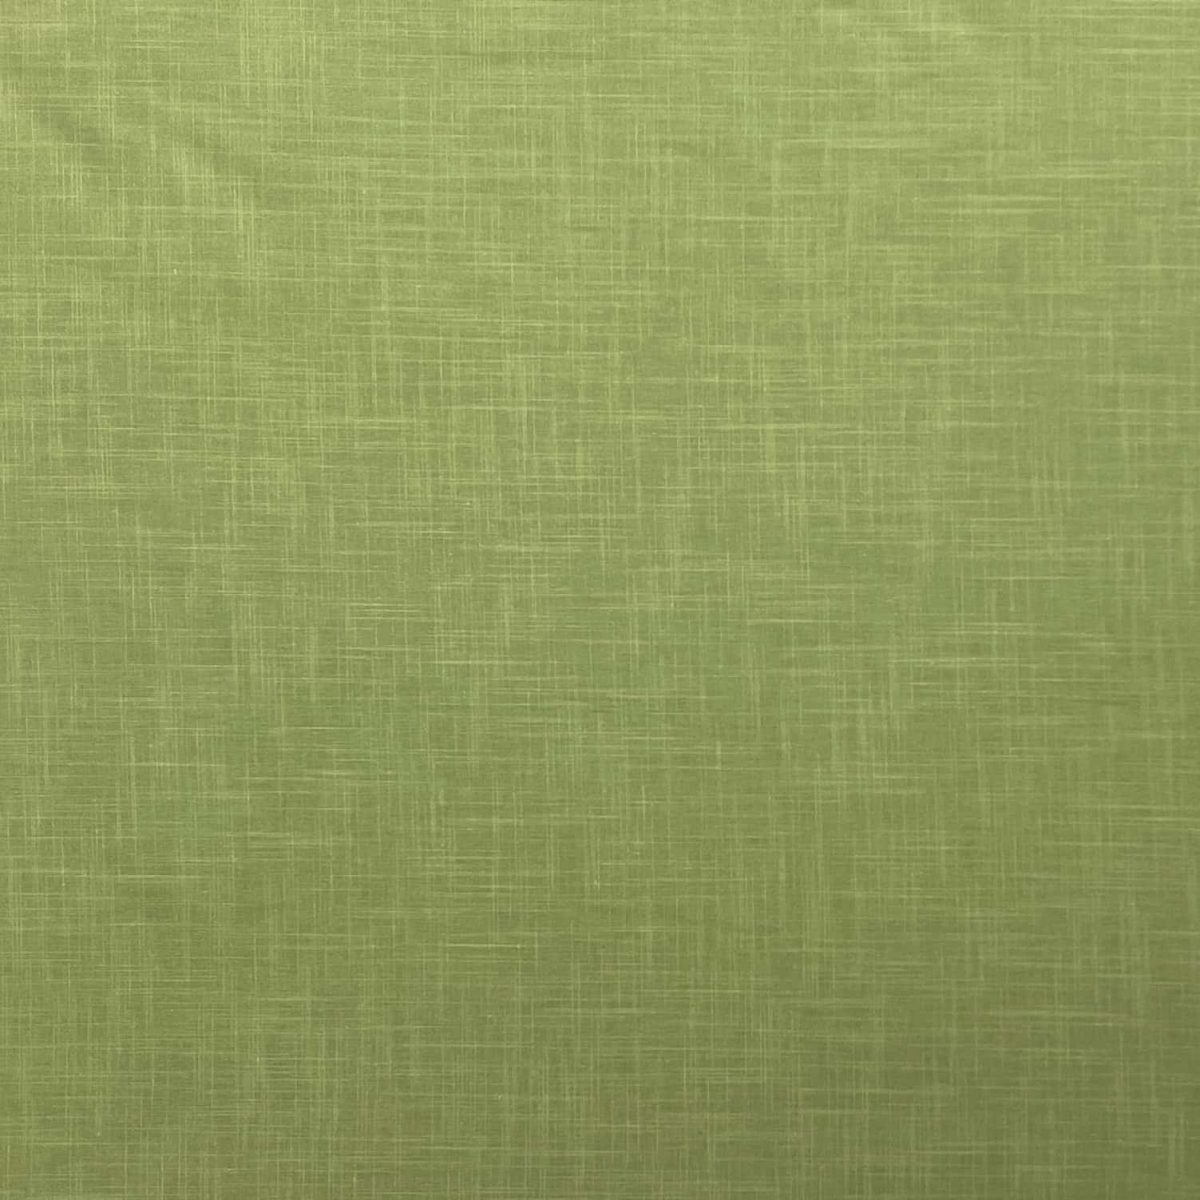 birlik1952 şantuklu pamuk keten flamlı şantuk elbiselik gömleklik kumaş shantung linen cotton shirt whosale denizli fabric adaçayı sage